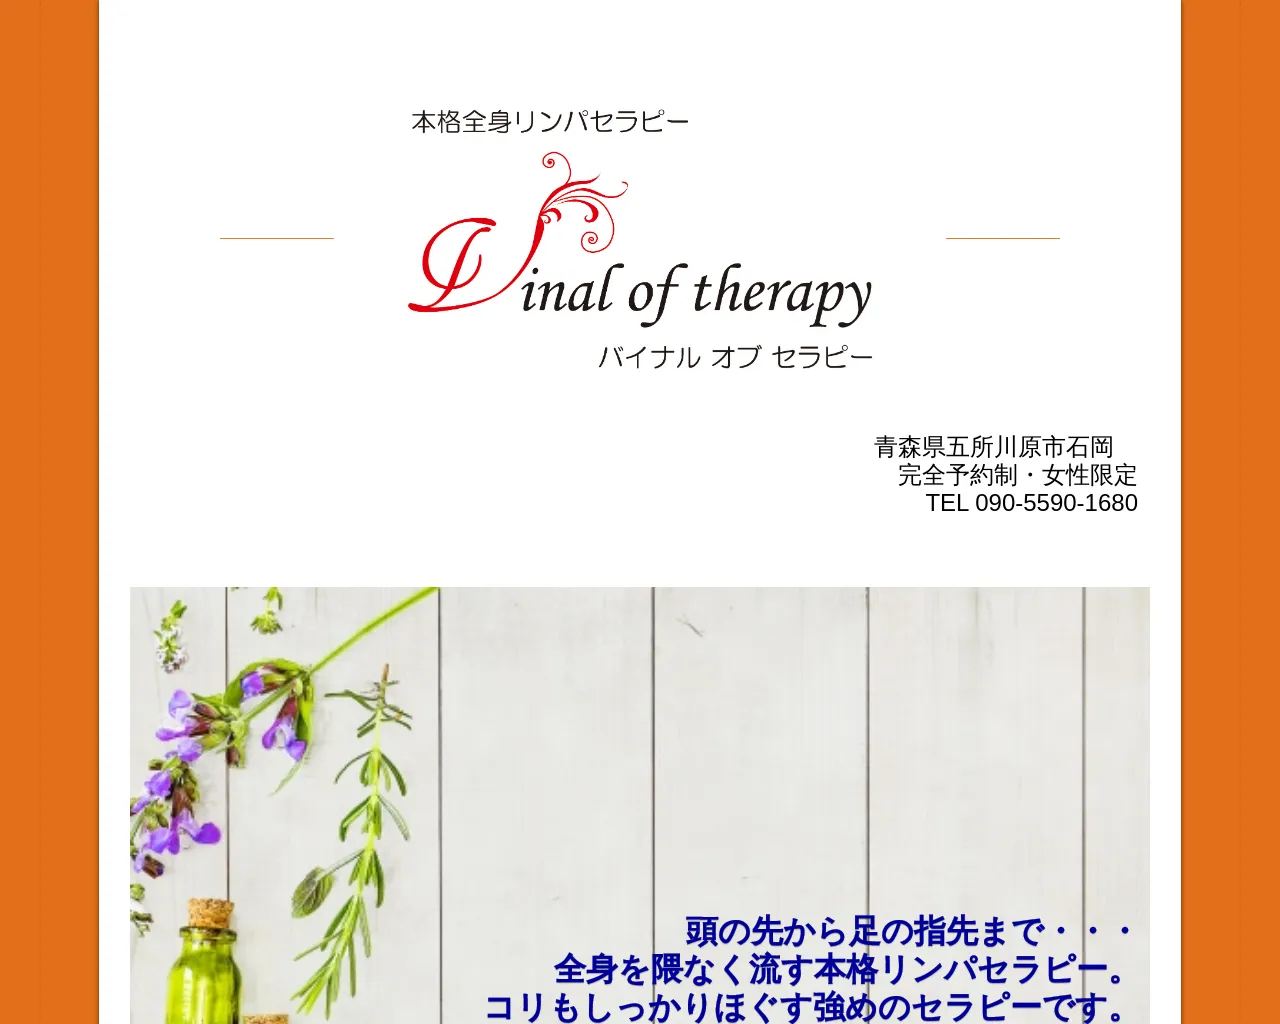 バイナルオブセラピー Vinal of therapy site